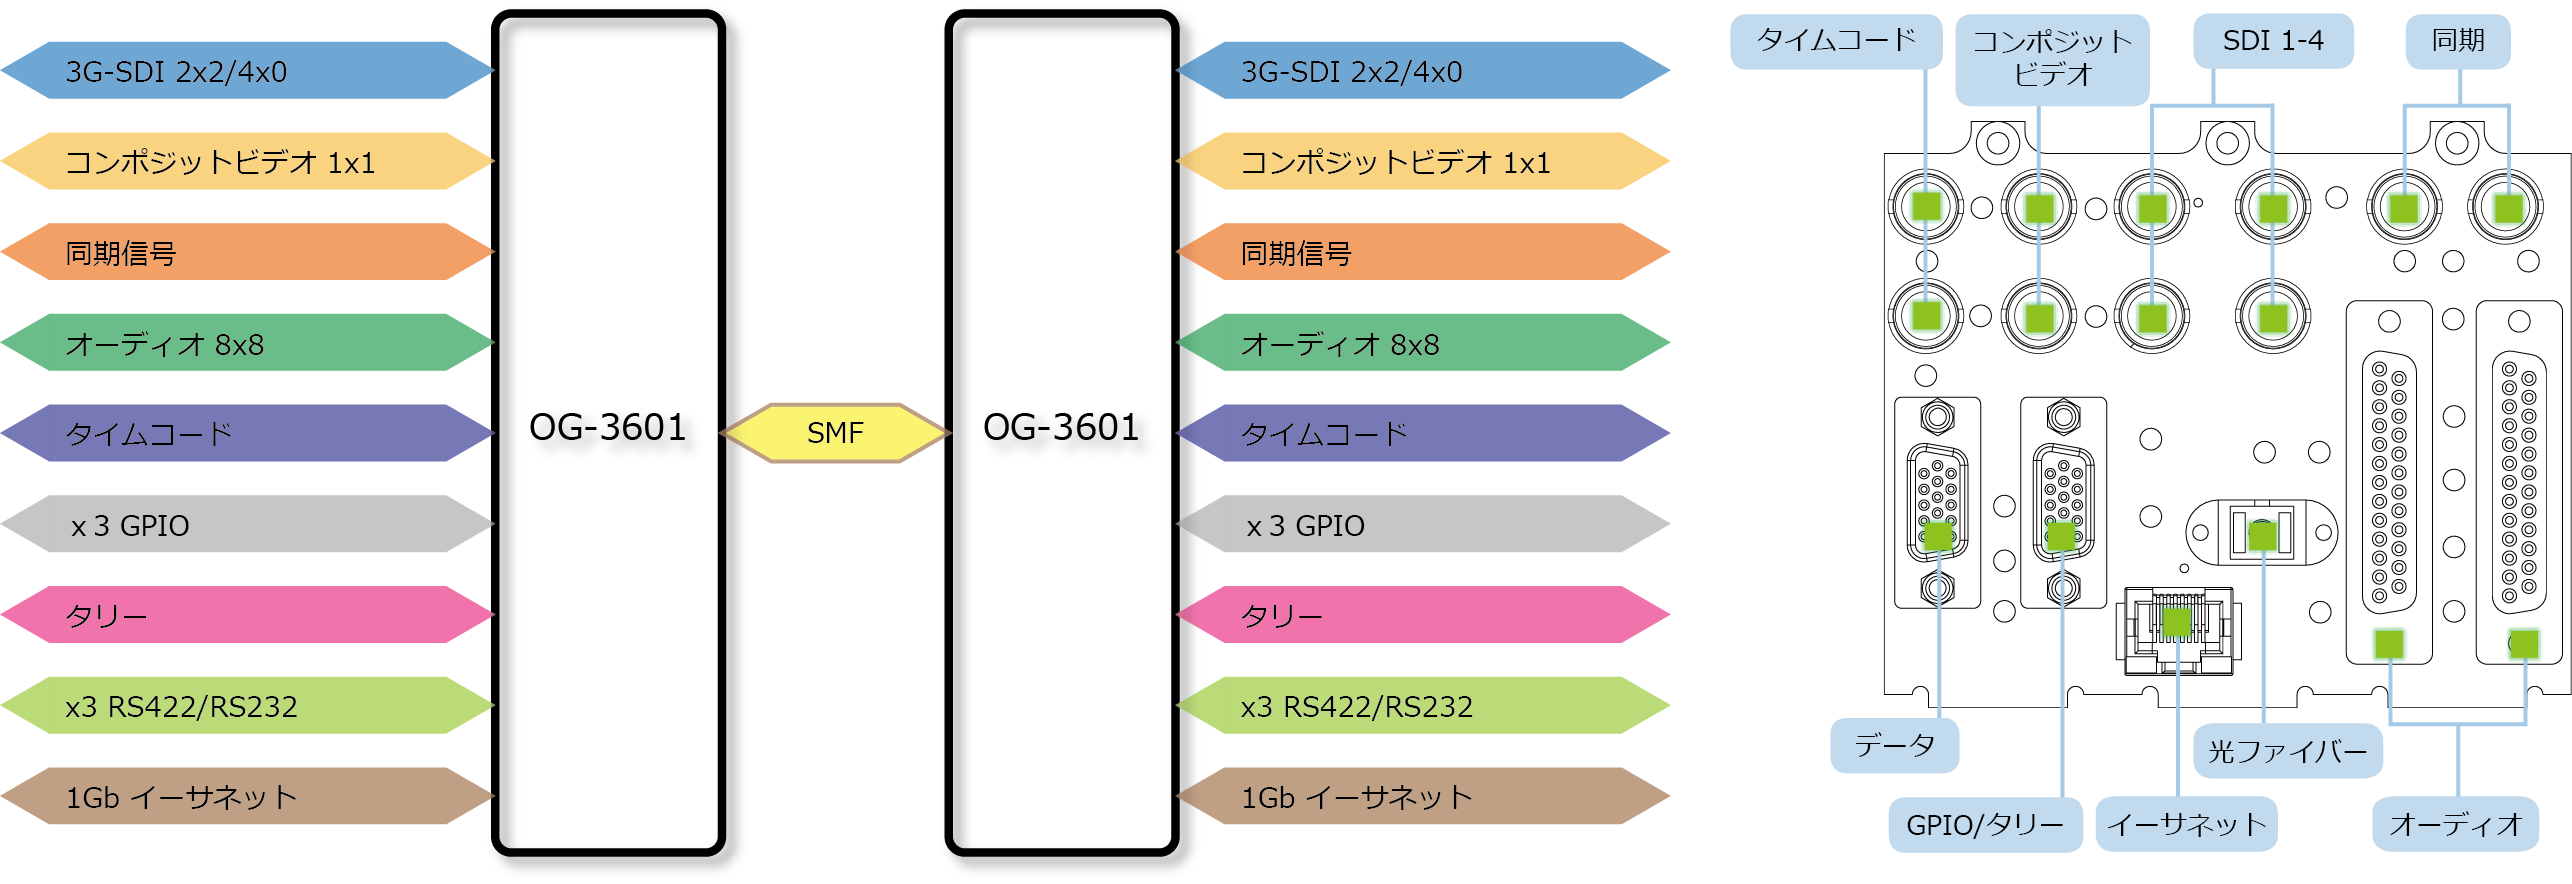 OG-3601 ブロック図/リアパネル図